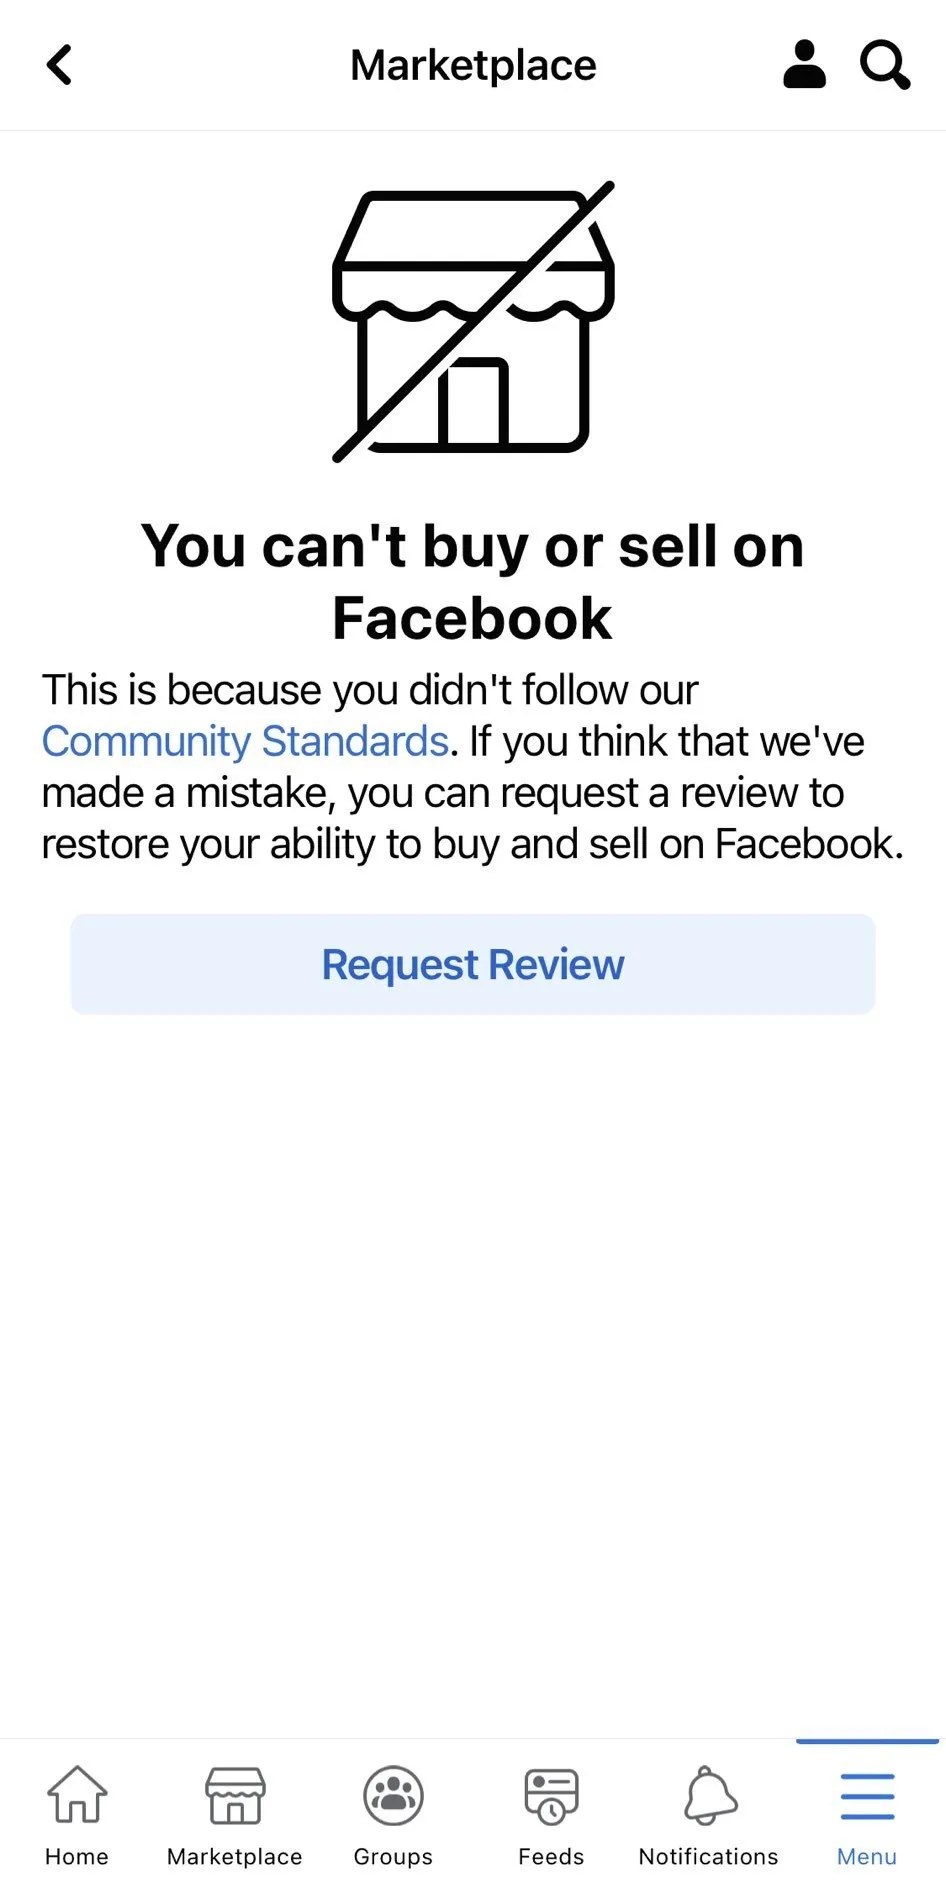 No puedes comprar ni vender en Facebook